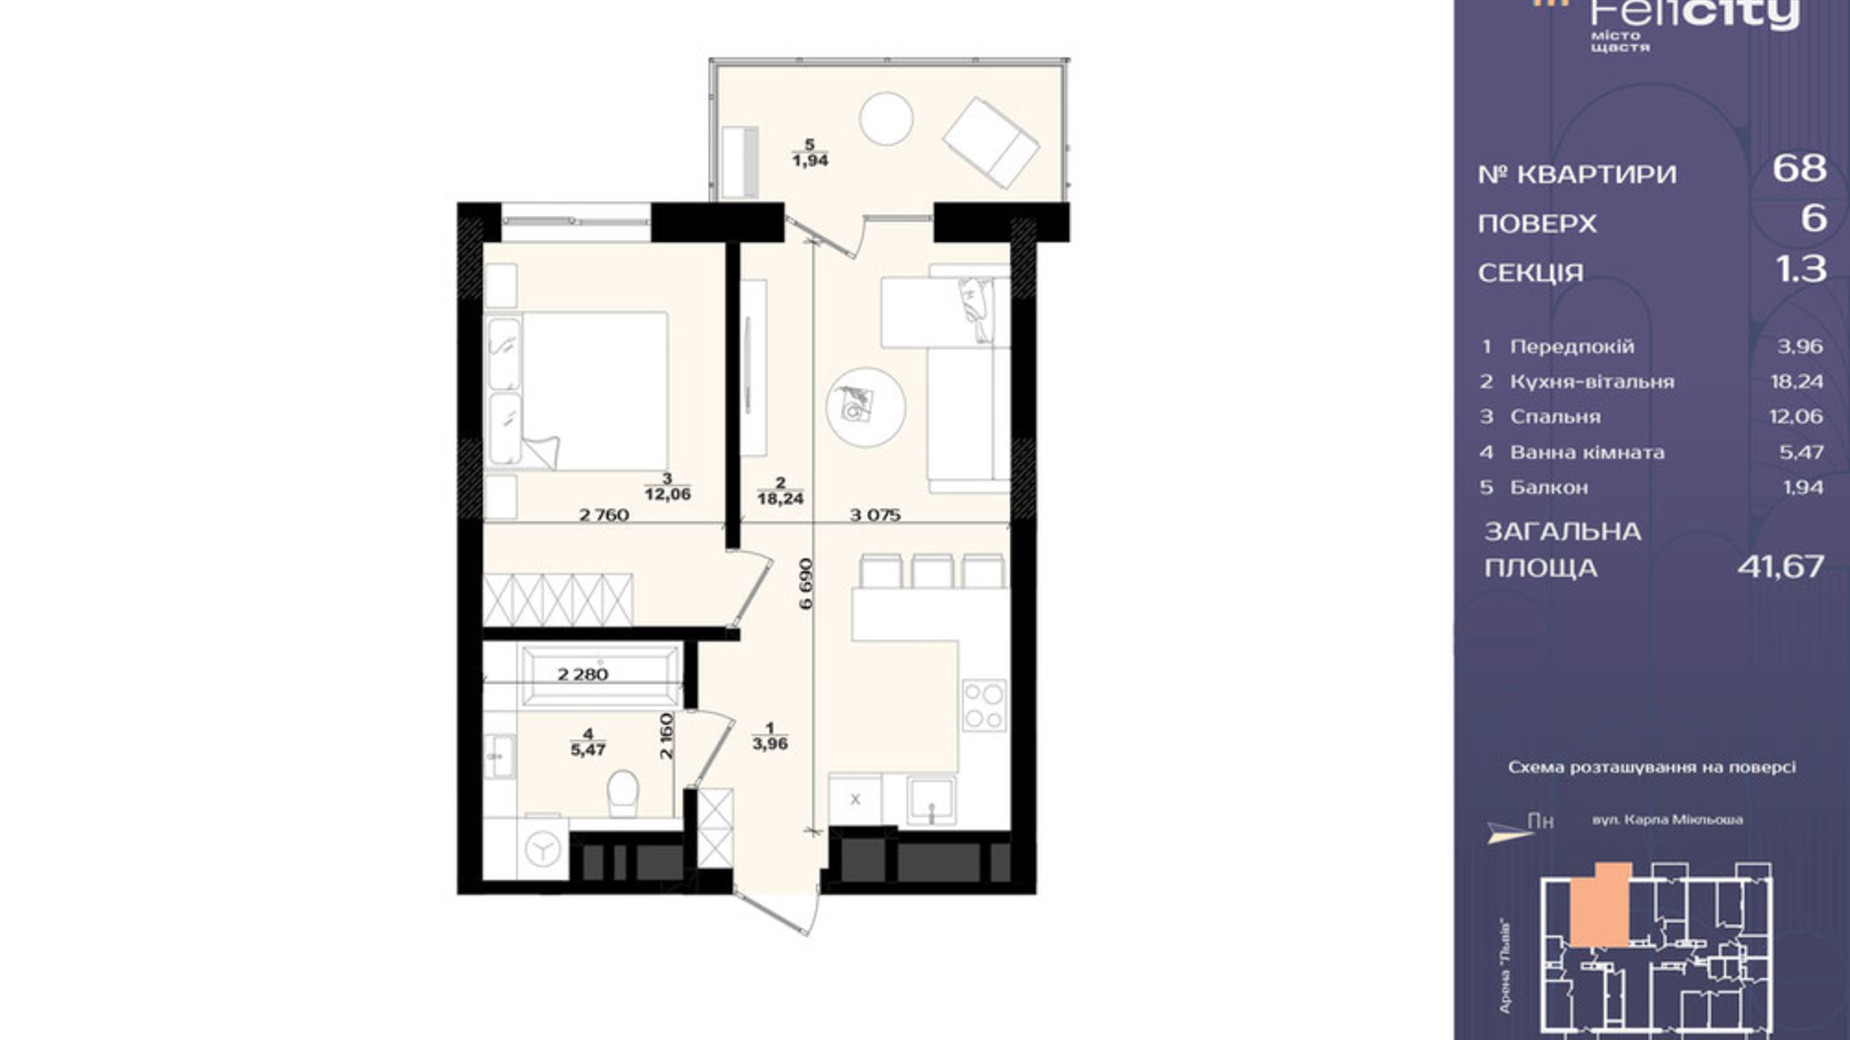 Планировка 1-комнатной квартиры в ЖК Felicity 41.67 м², фото 709714